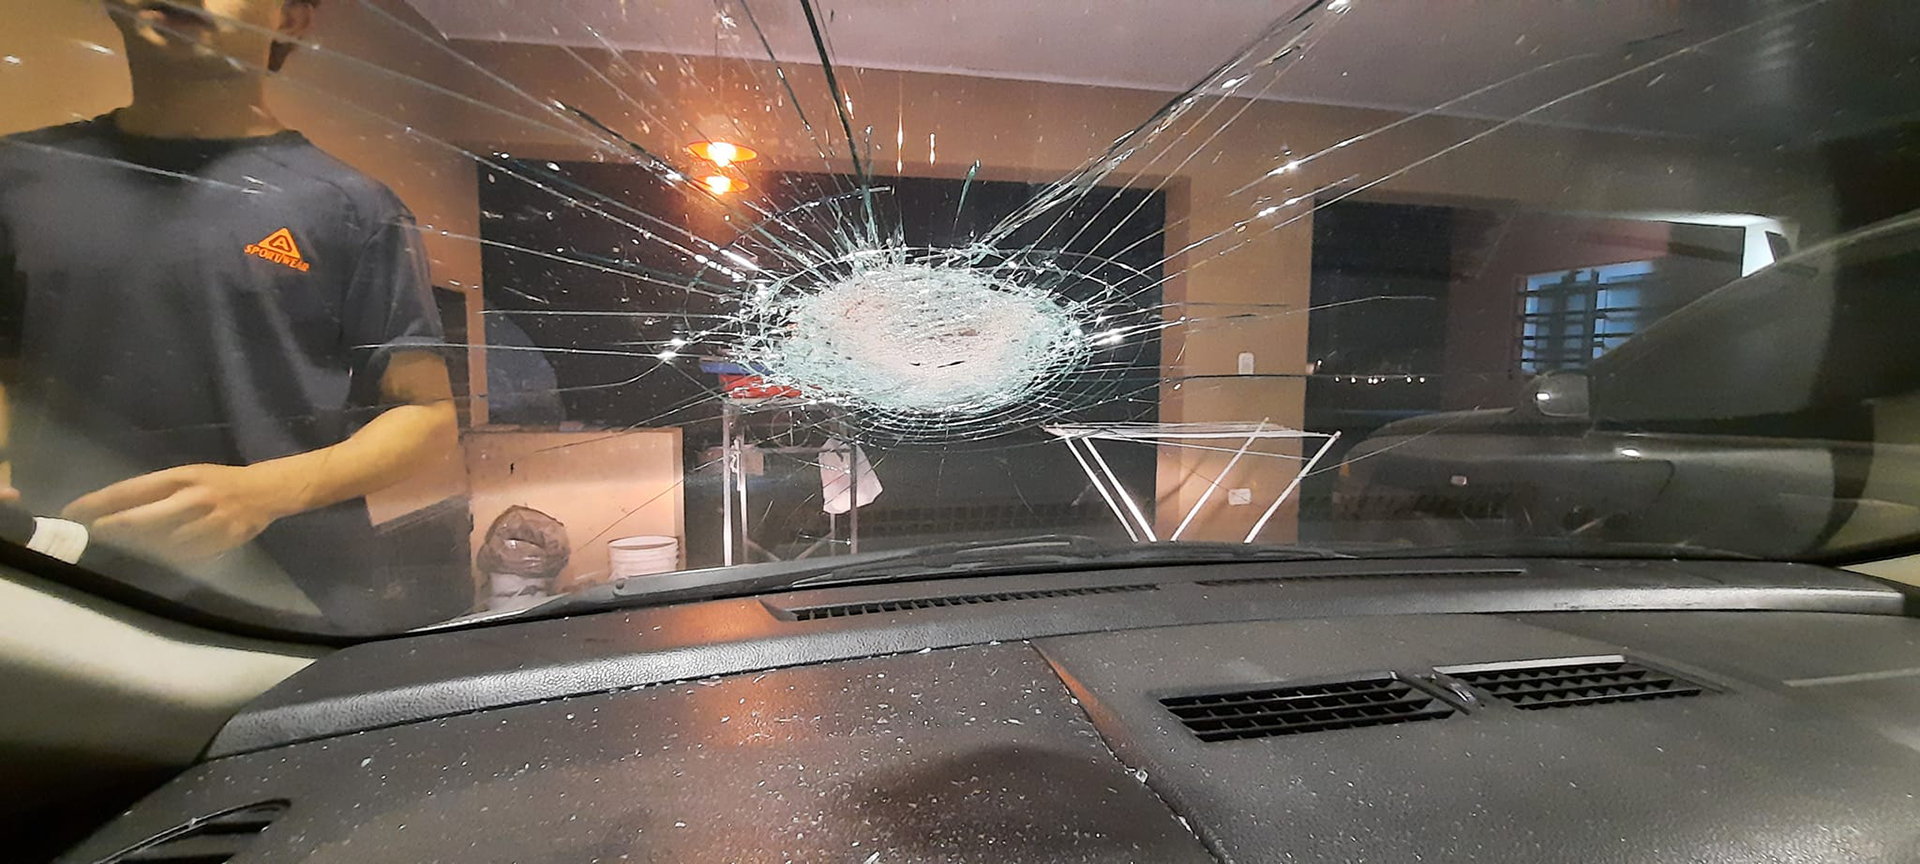 Siguen los ataques a piedrazos contra automovilistas en zona oeste: vecinos de Luján reclaman medidas de seguridad 